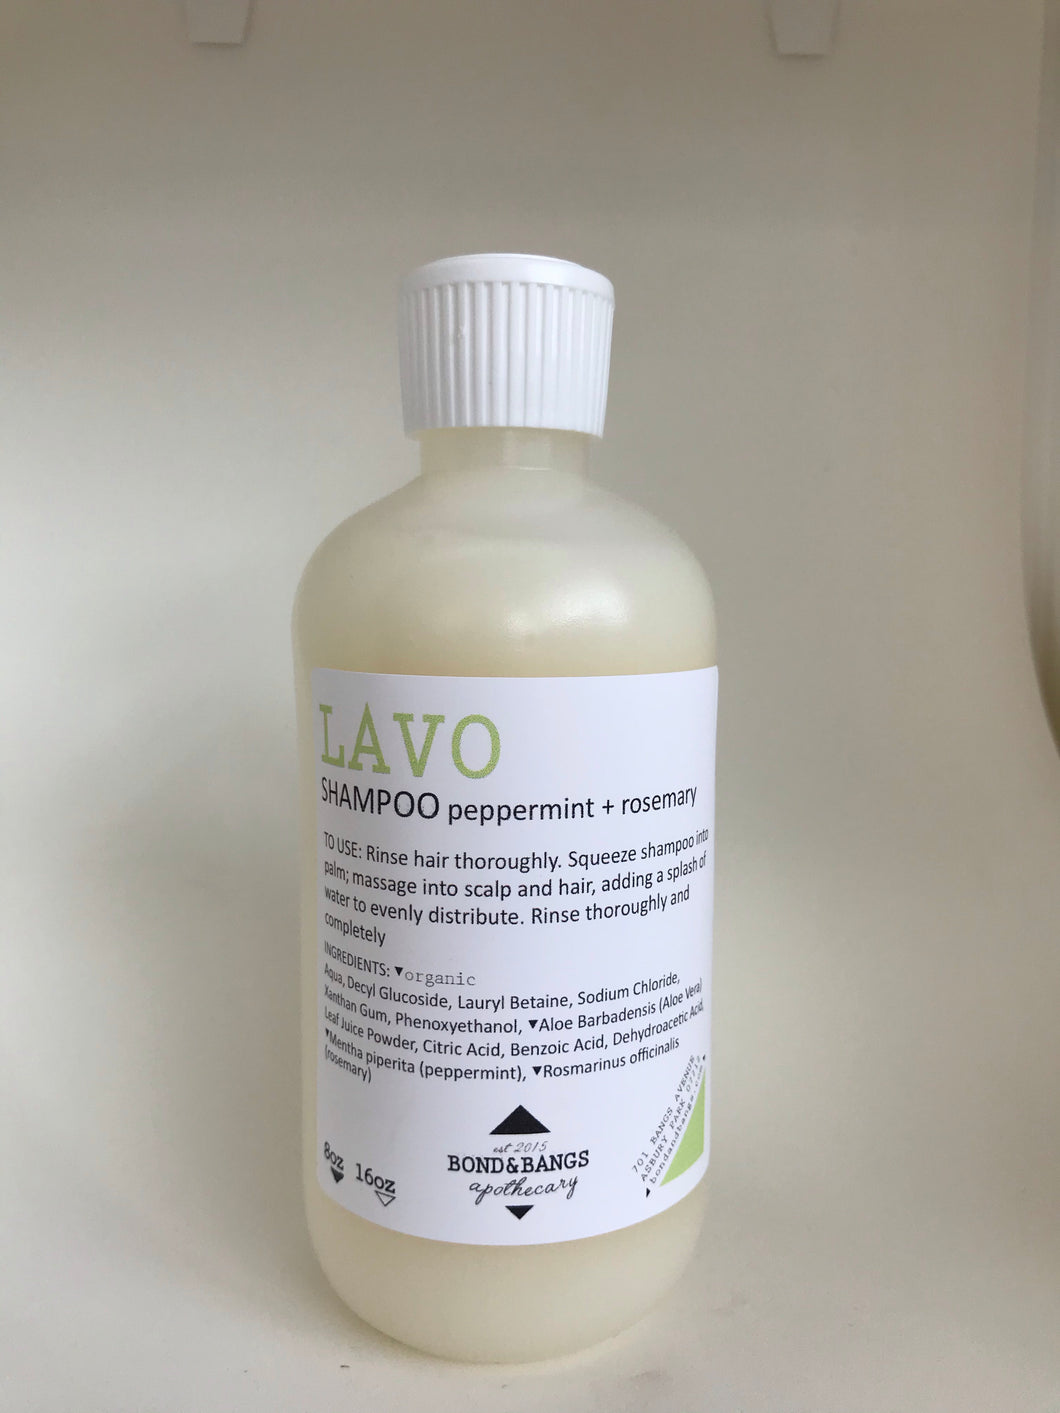 Lavo: Shampoo